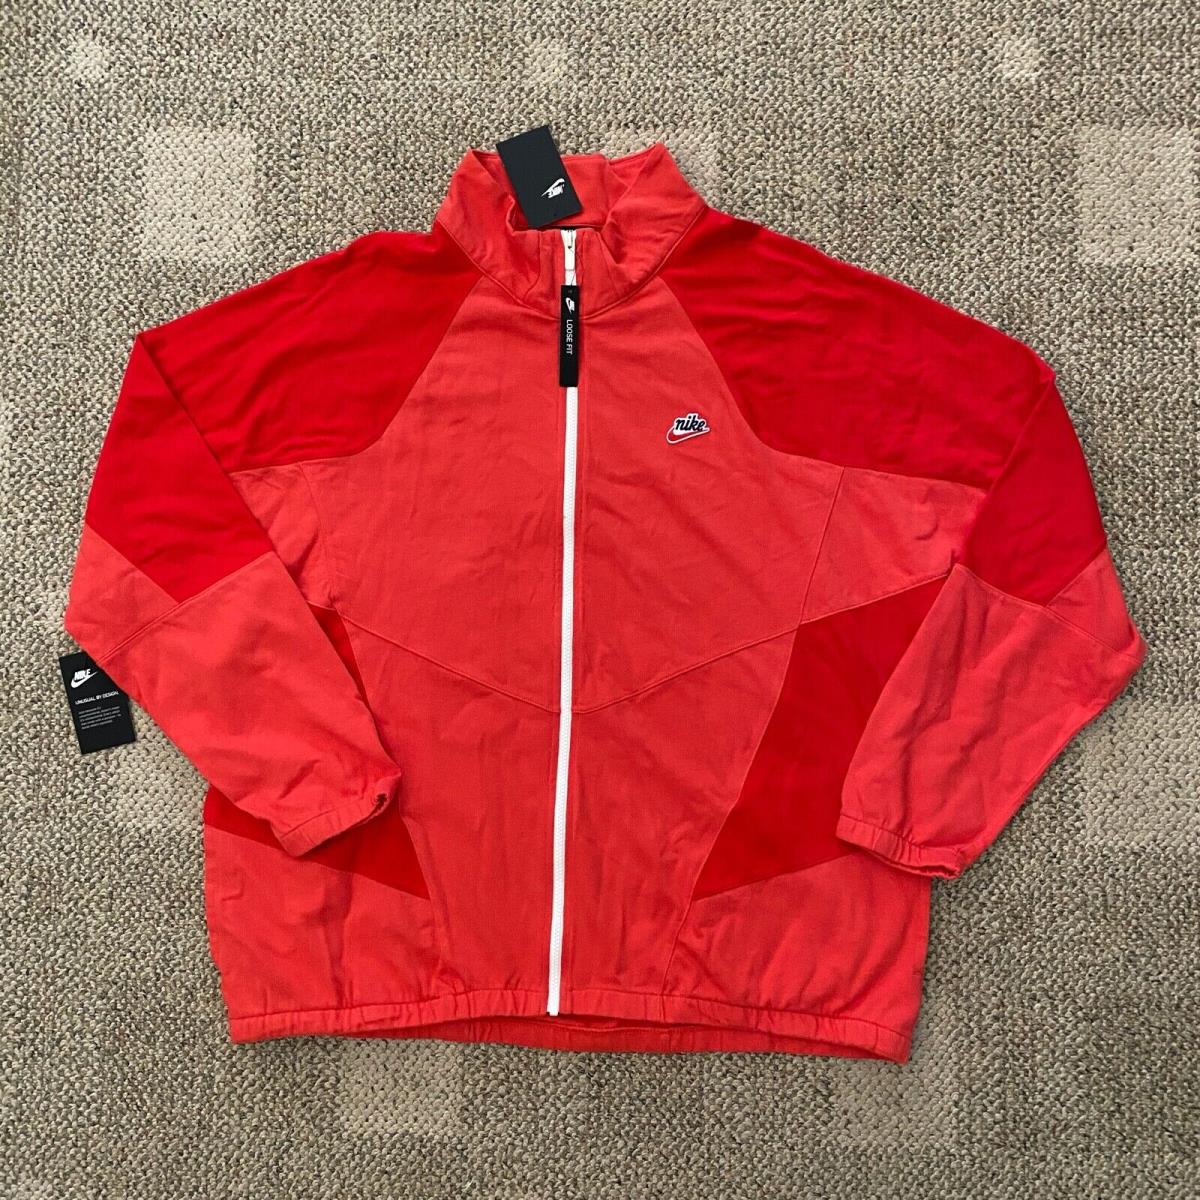 Mens XL Nike Sportswear Cotton Heritage Windrunner Sweatshirt Jacket Red CJ4366